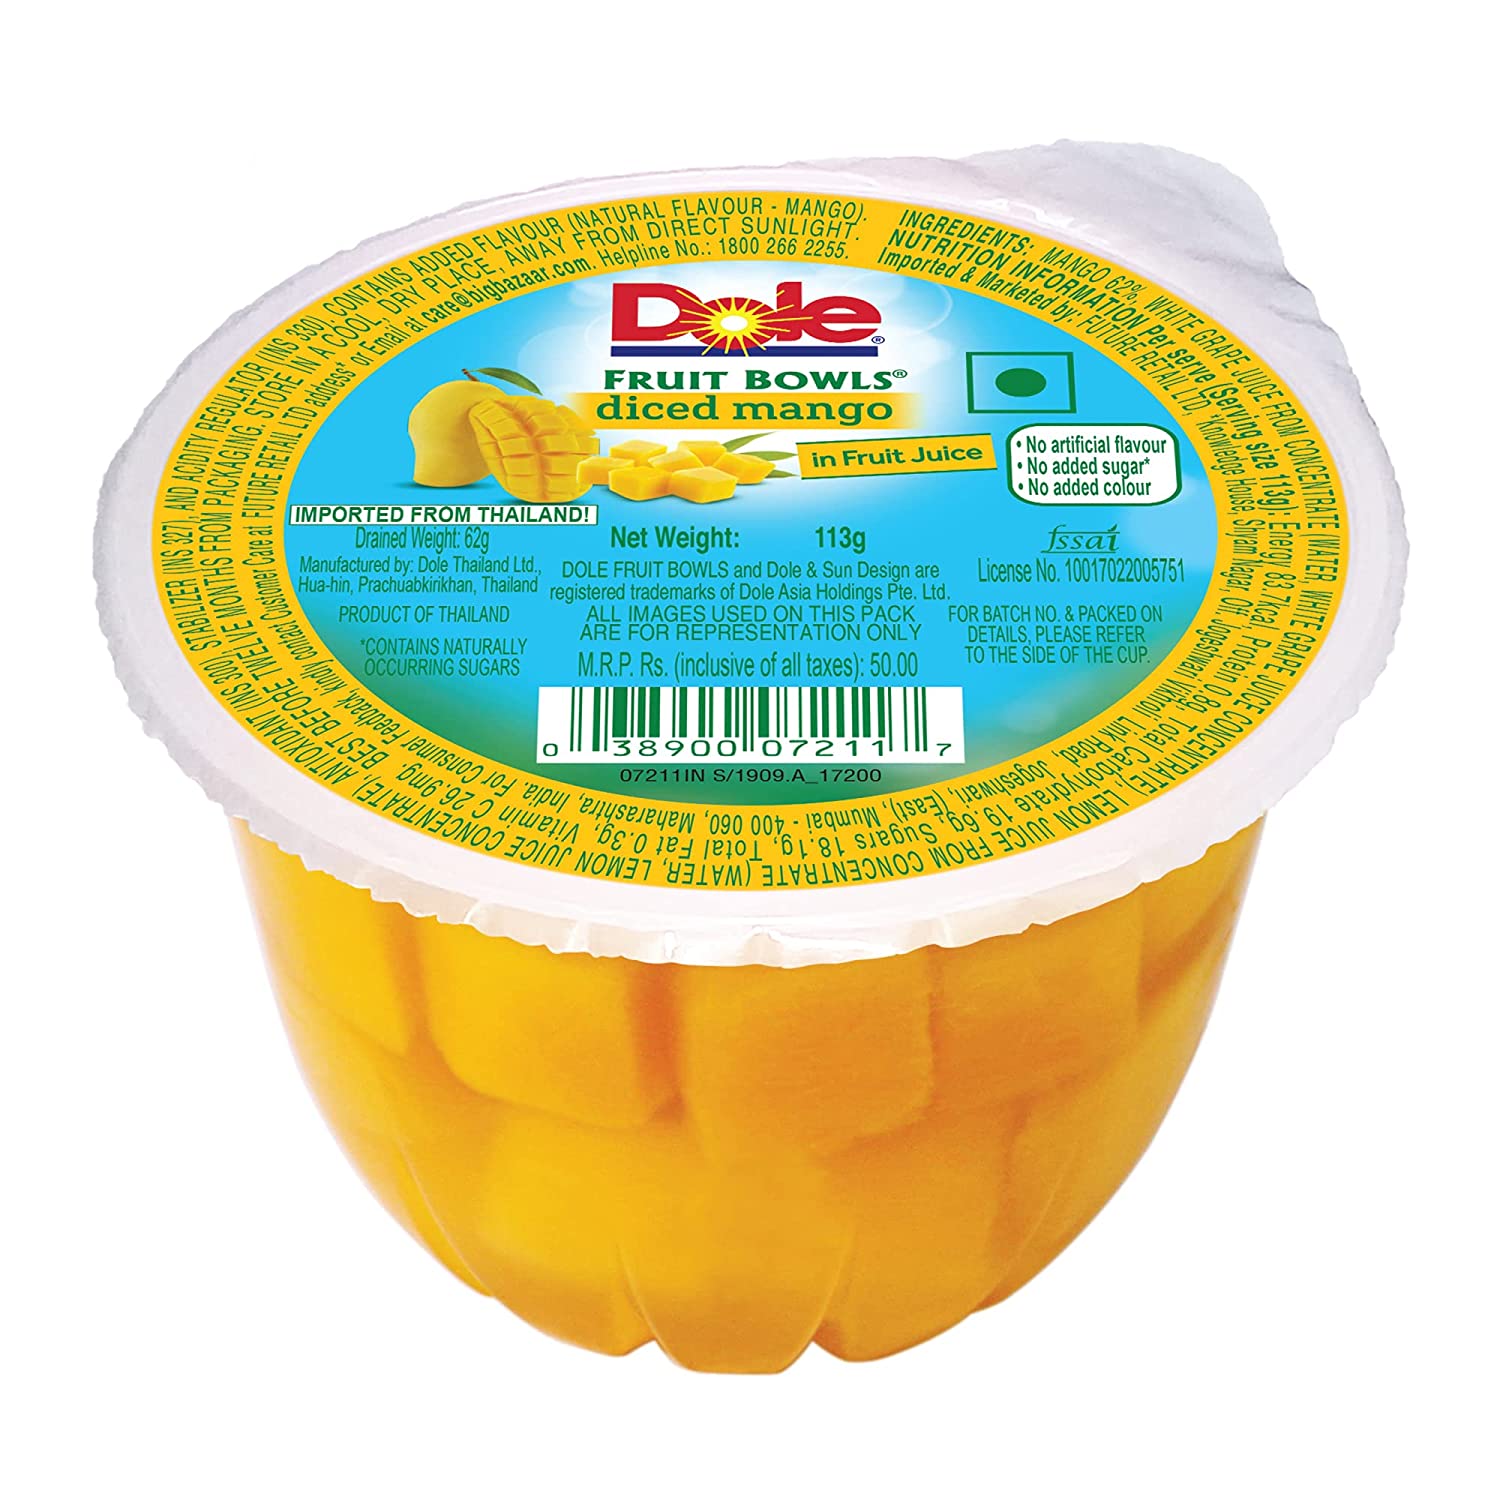 Dole Fruit Bowl Diced Mango Image